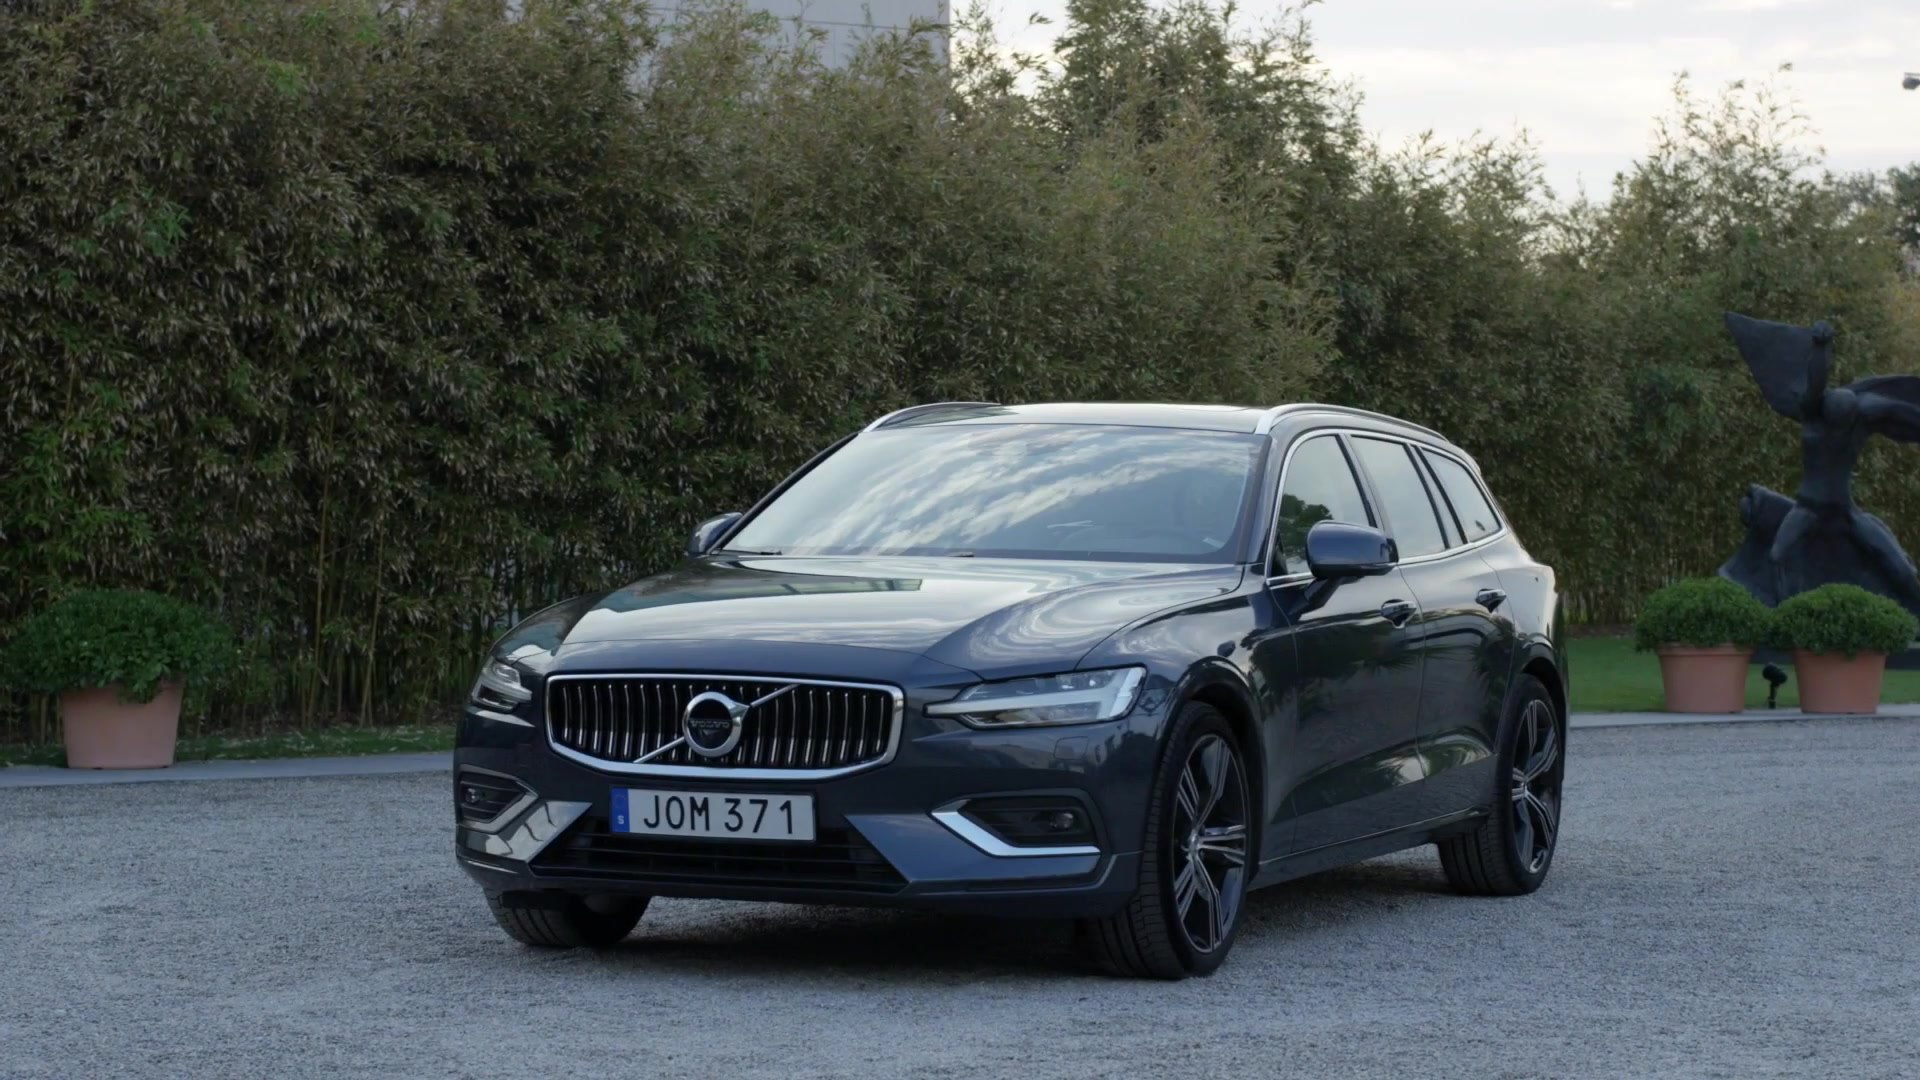 New Volvo V60 D4 Inscription Denim Blue Interior and exterior design -  video Dailymotion